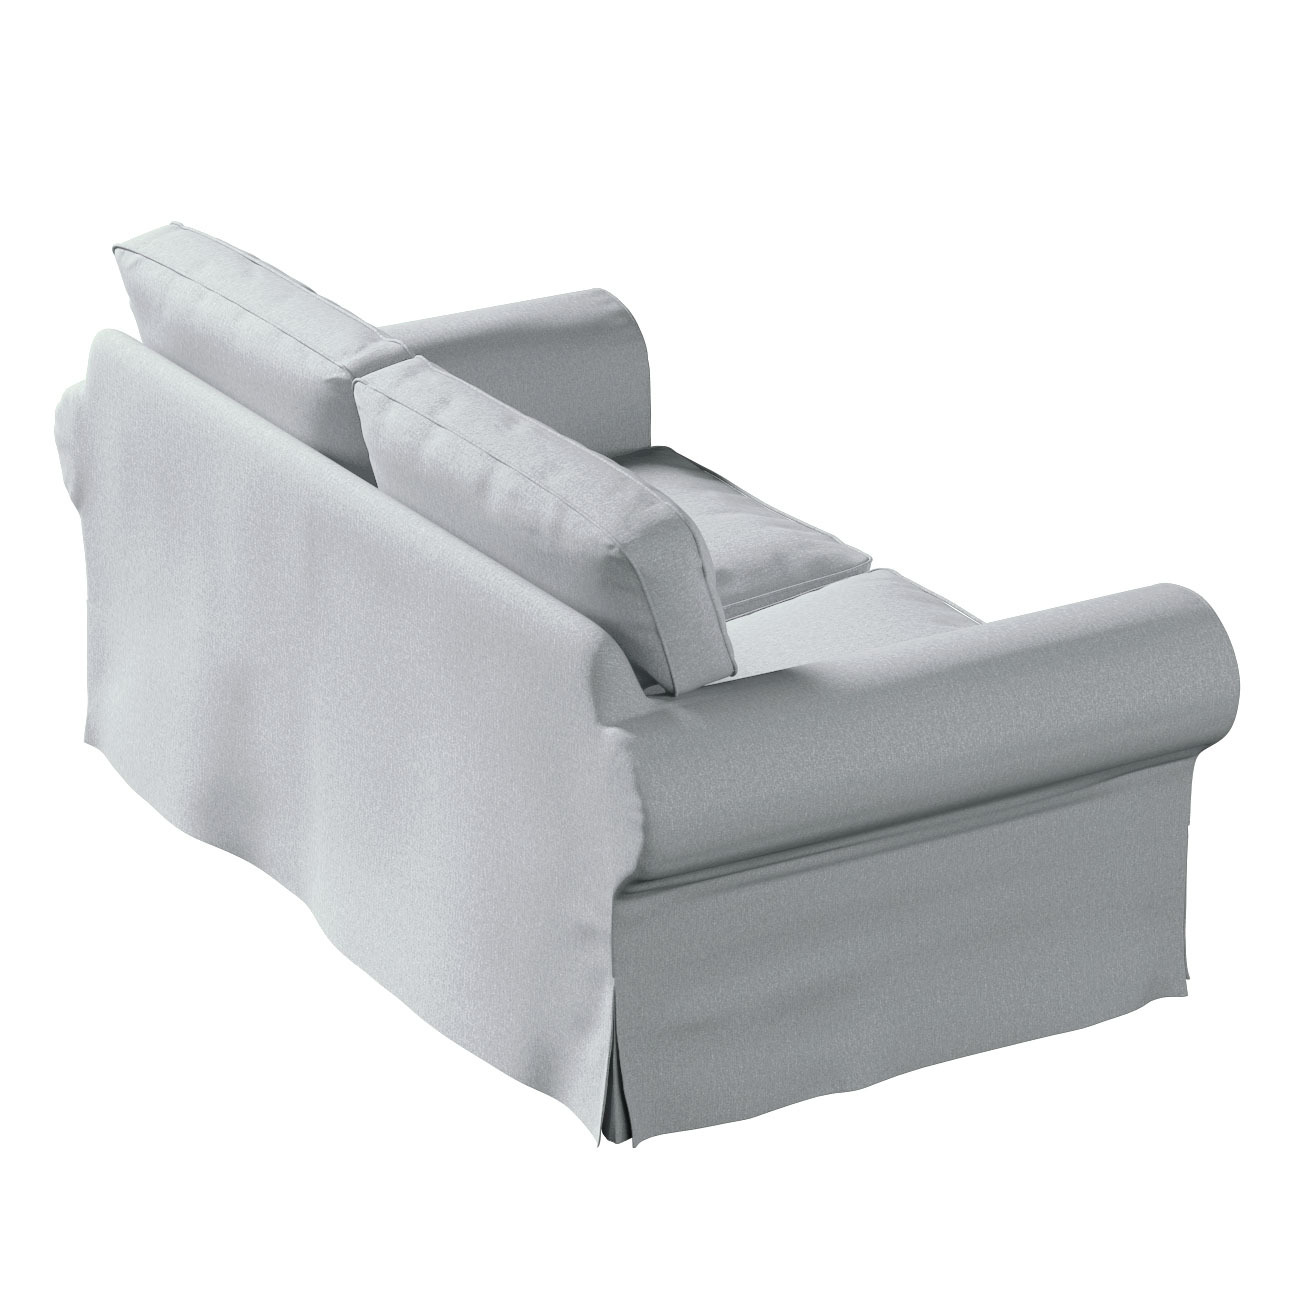 Bezug für Ektorp 2-Sitzer Schlafsofa ALTES Modell, grau, Sofabezug Ektorp 2 günstig online kaufen